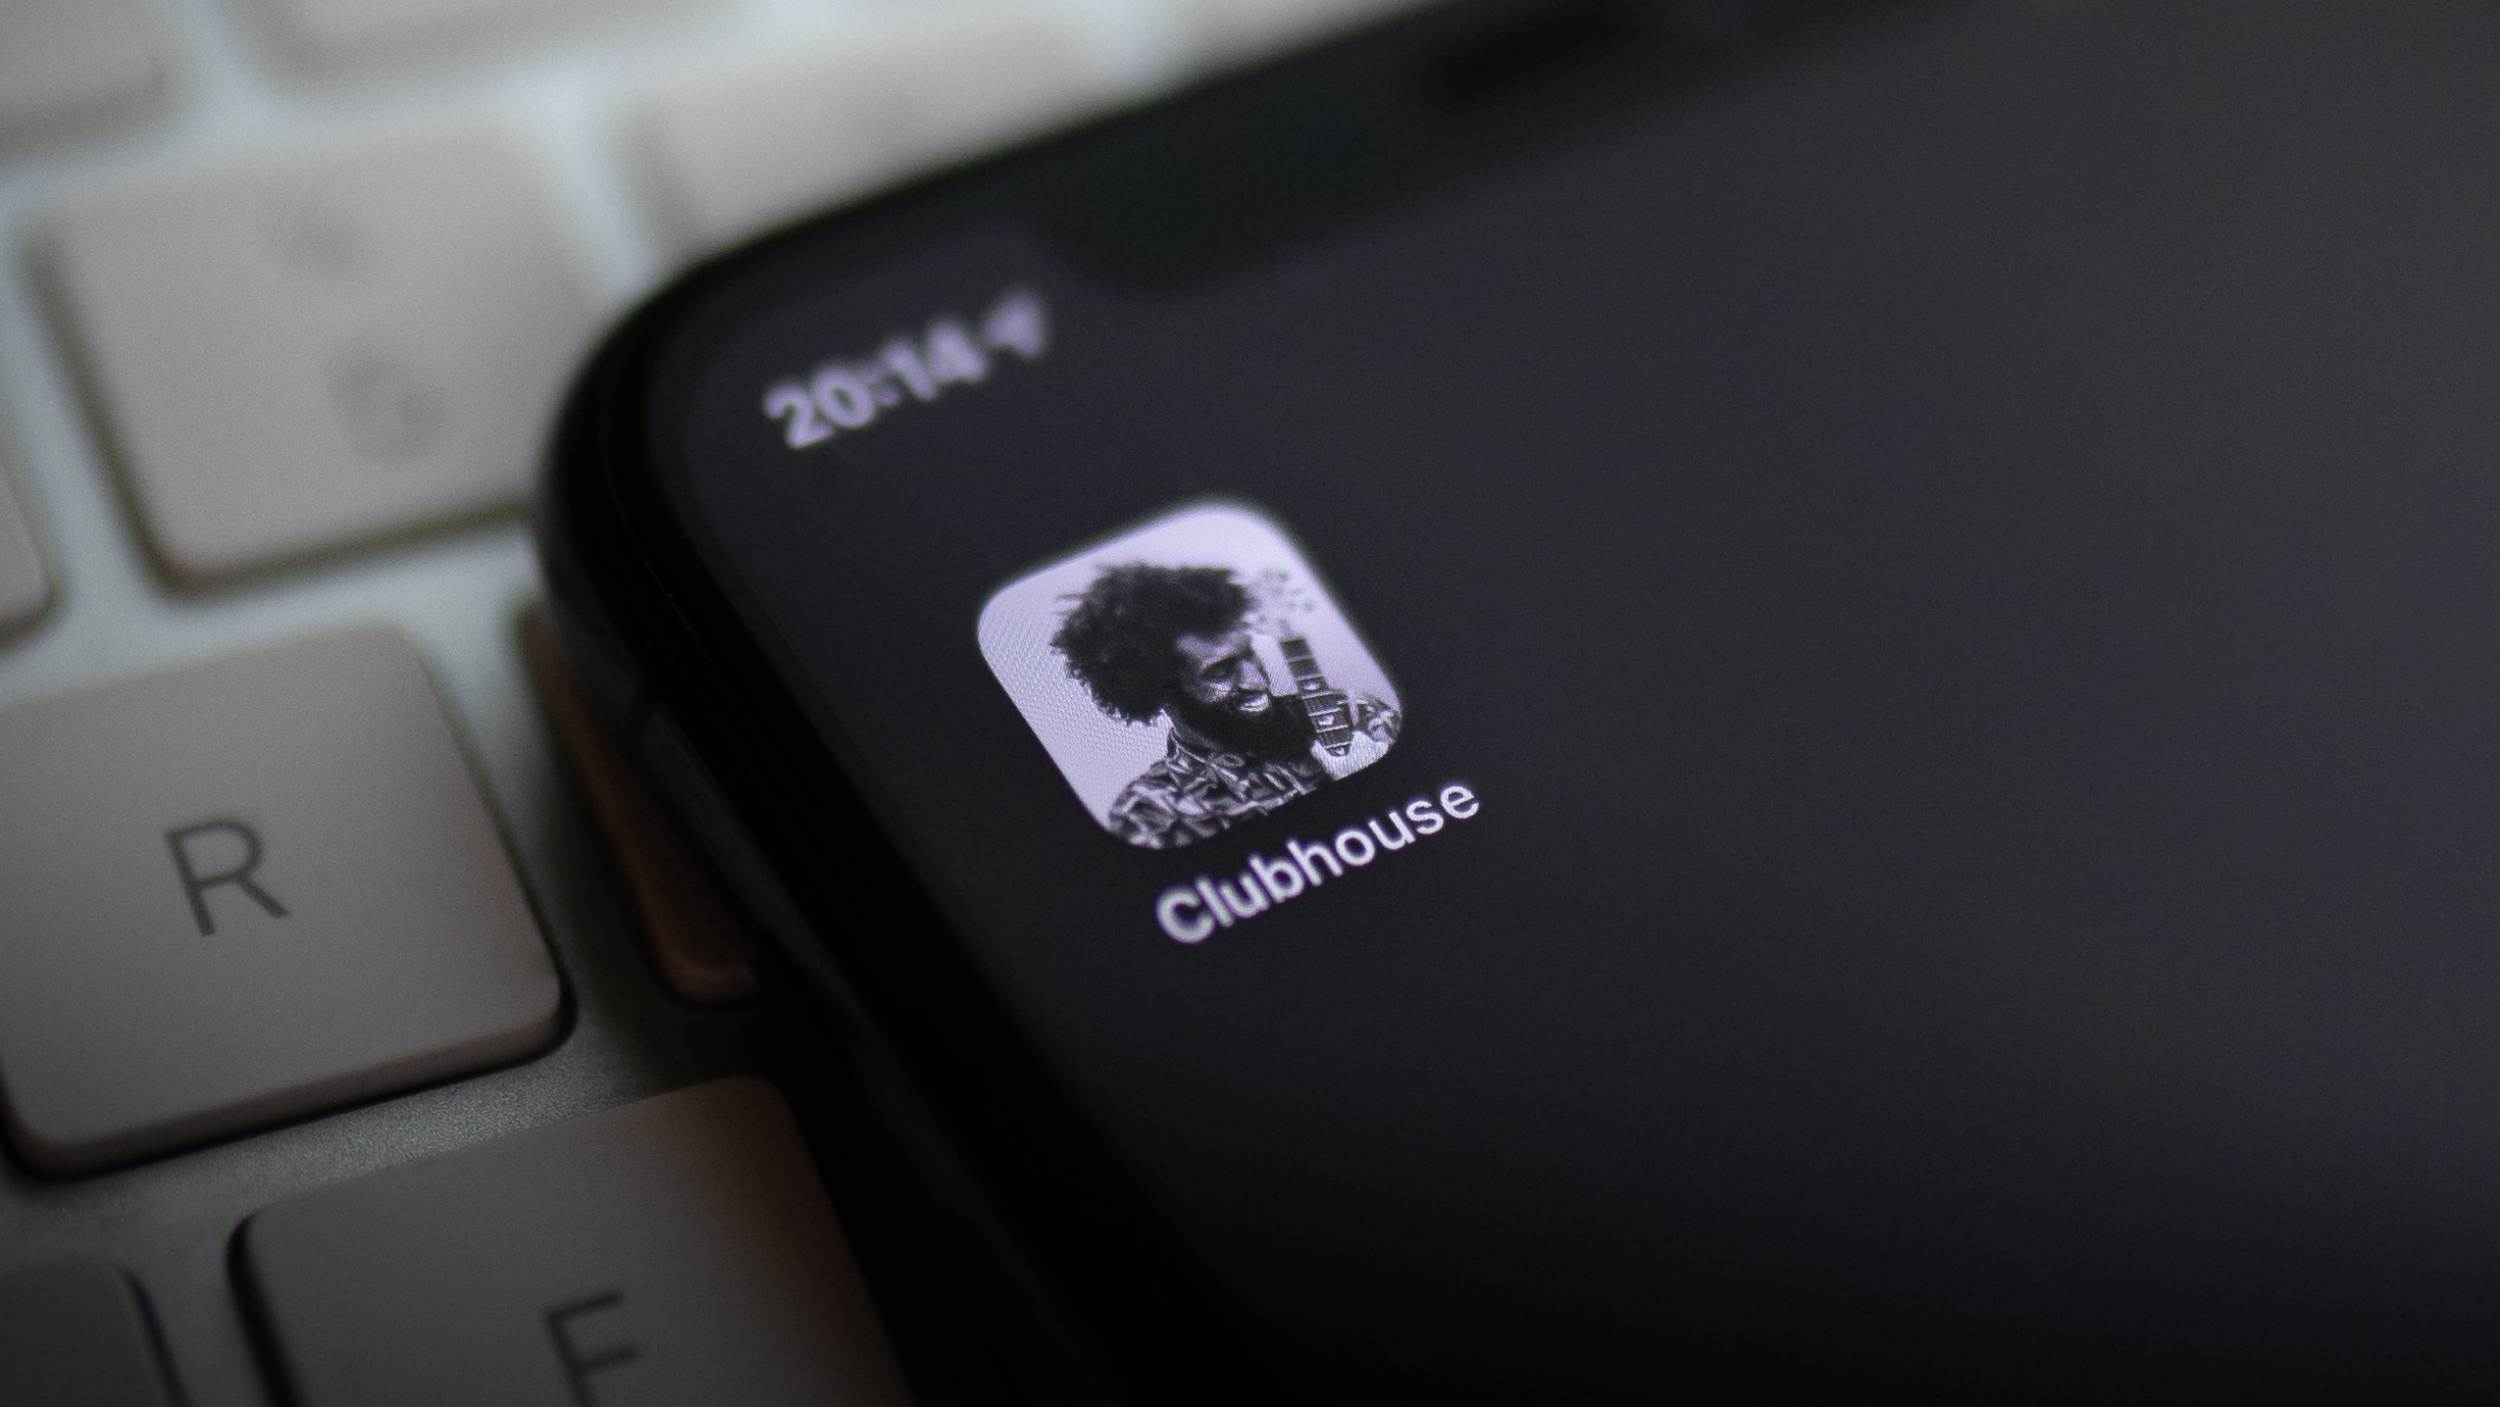 Clubhouse Kini Mempunyai 10 Juta Pengguna Aktif Mingguan – Mula Melihat Kepada Versi Android